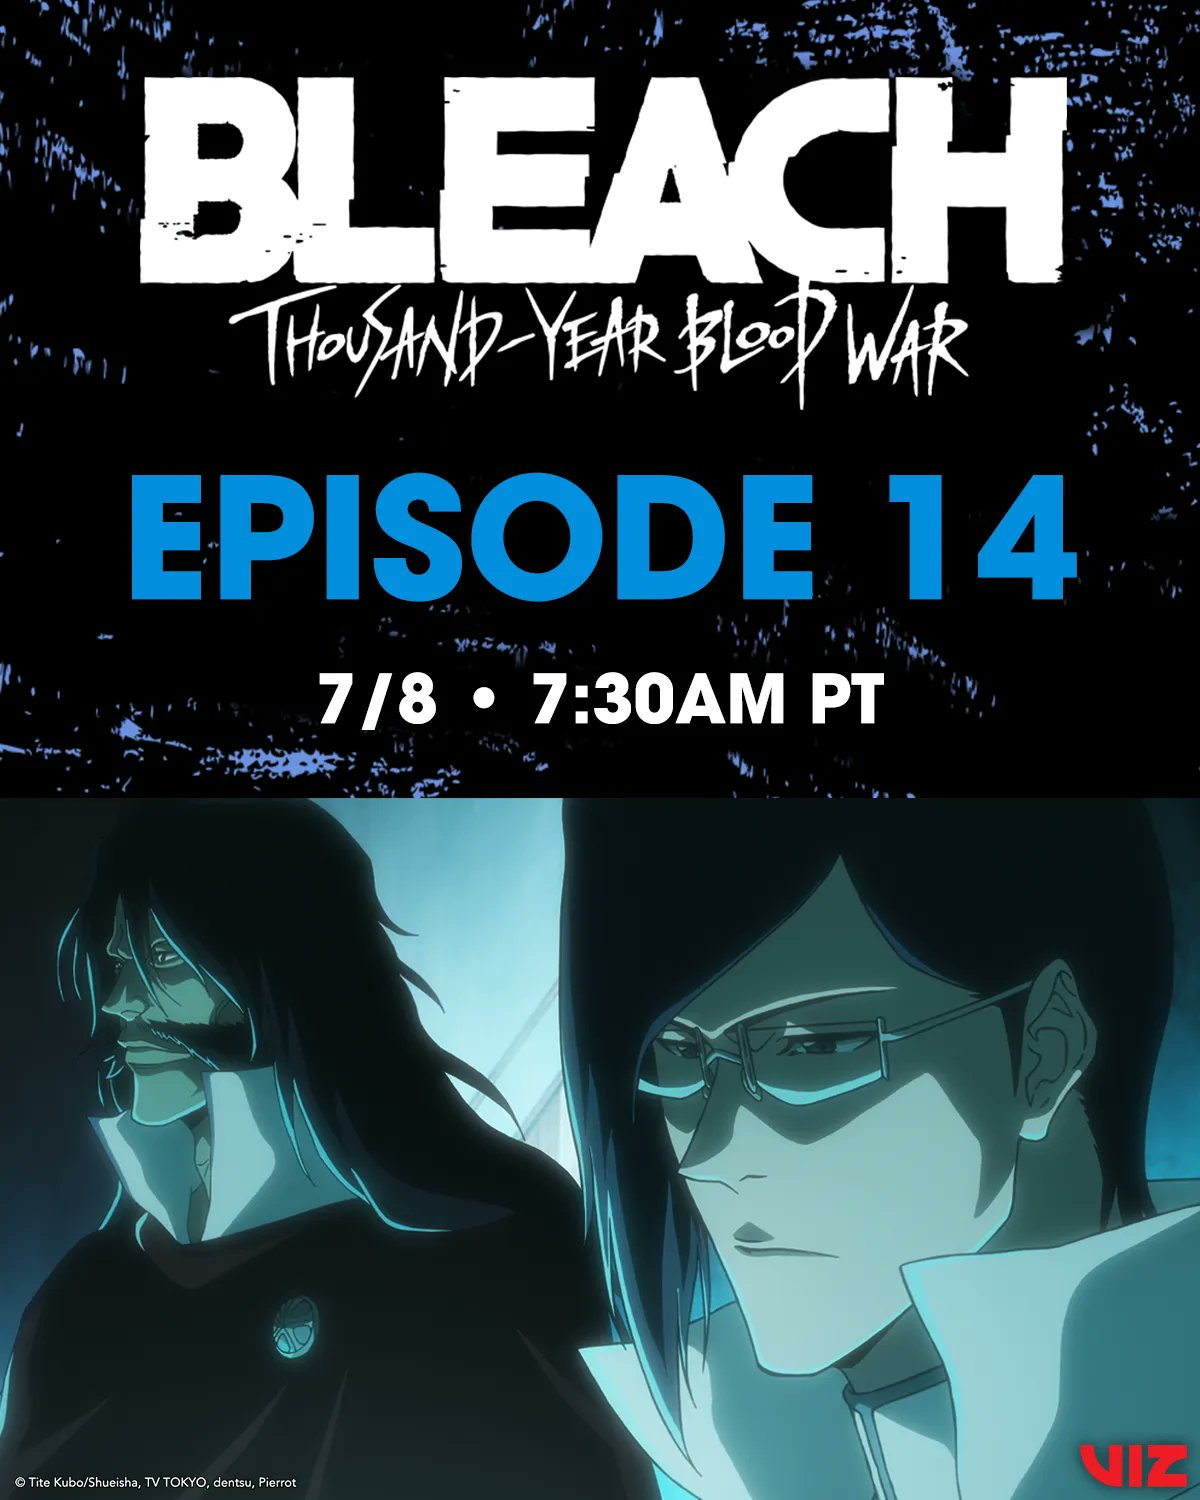 Bleach: Thousand-Year Blood War part 2 returns July 2023, Digital